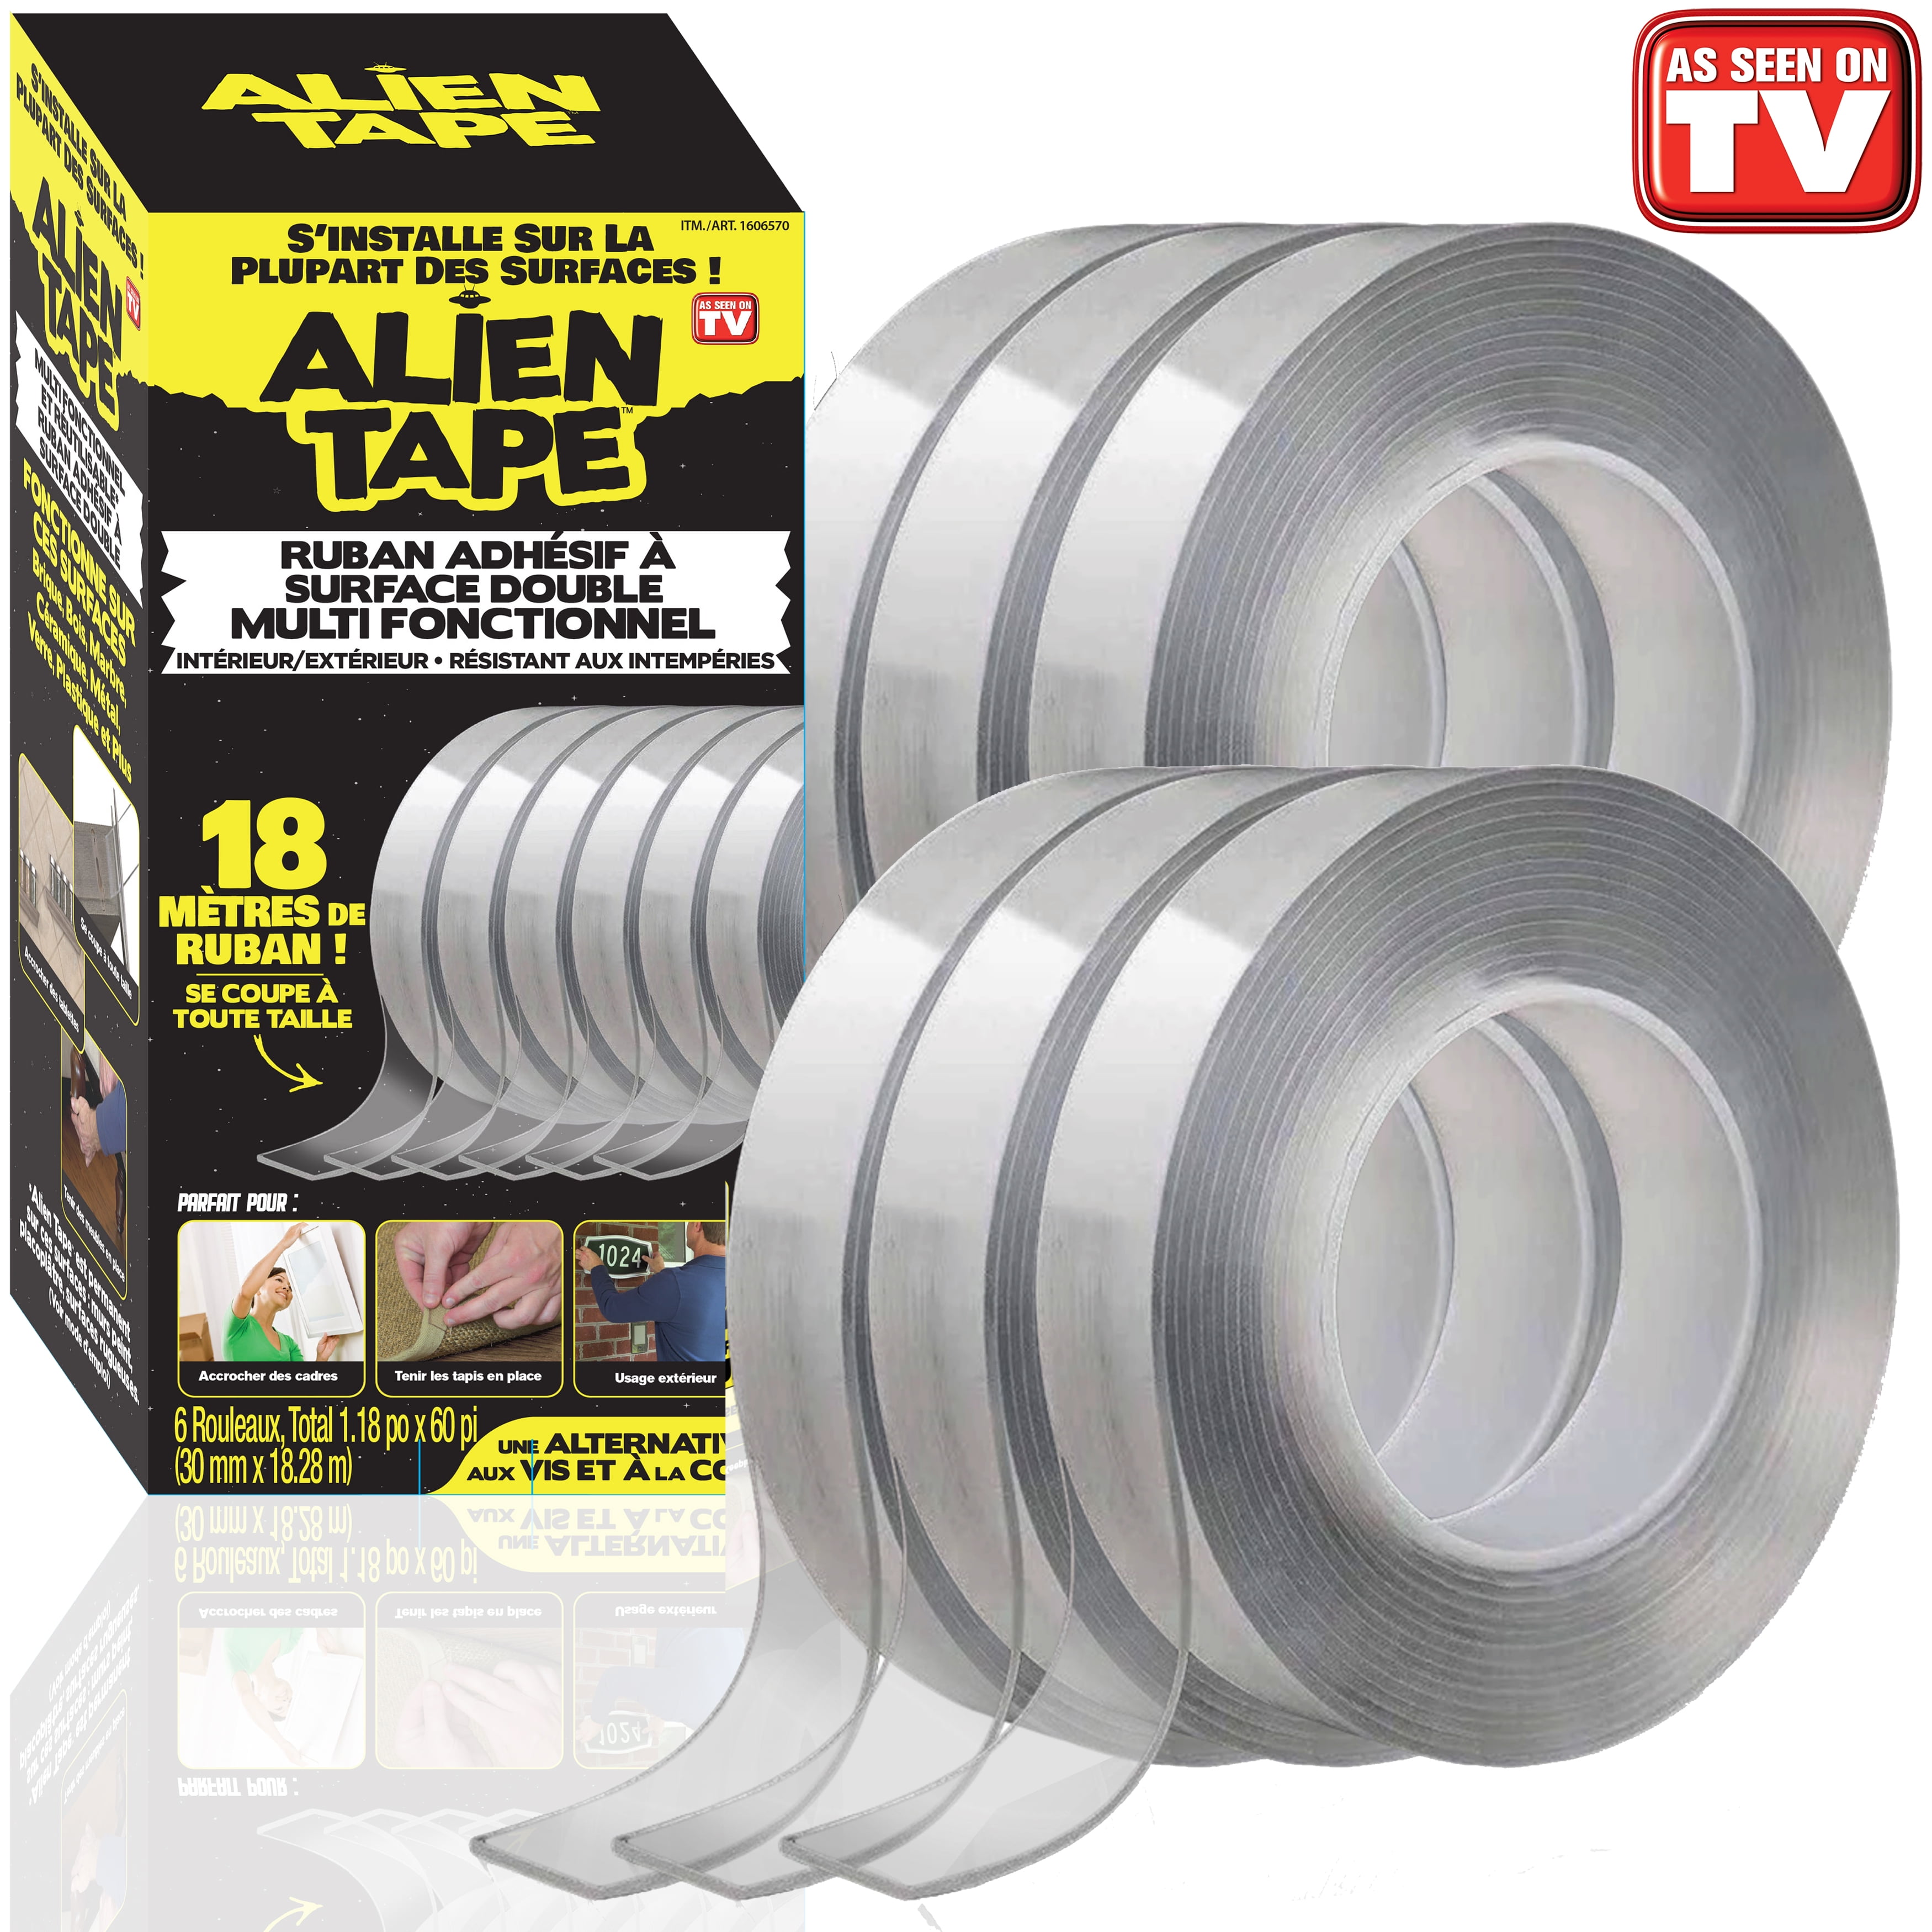 Alien Tape Triple Roll Double Sided Tape, Domestify